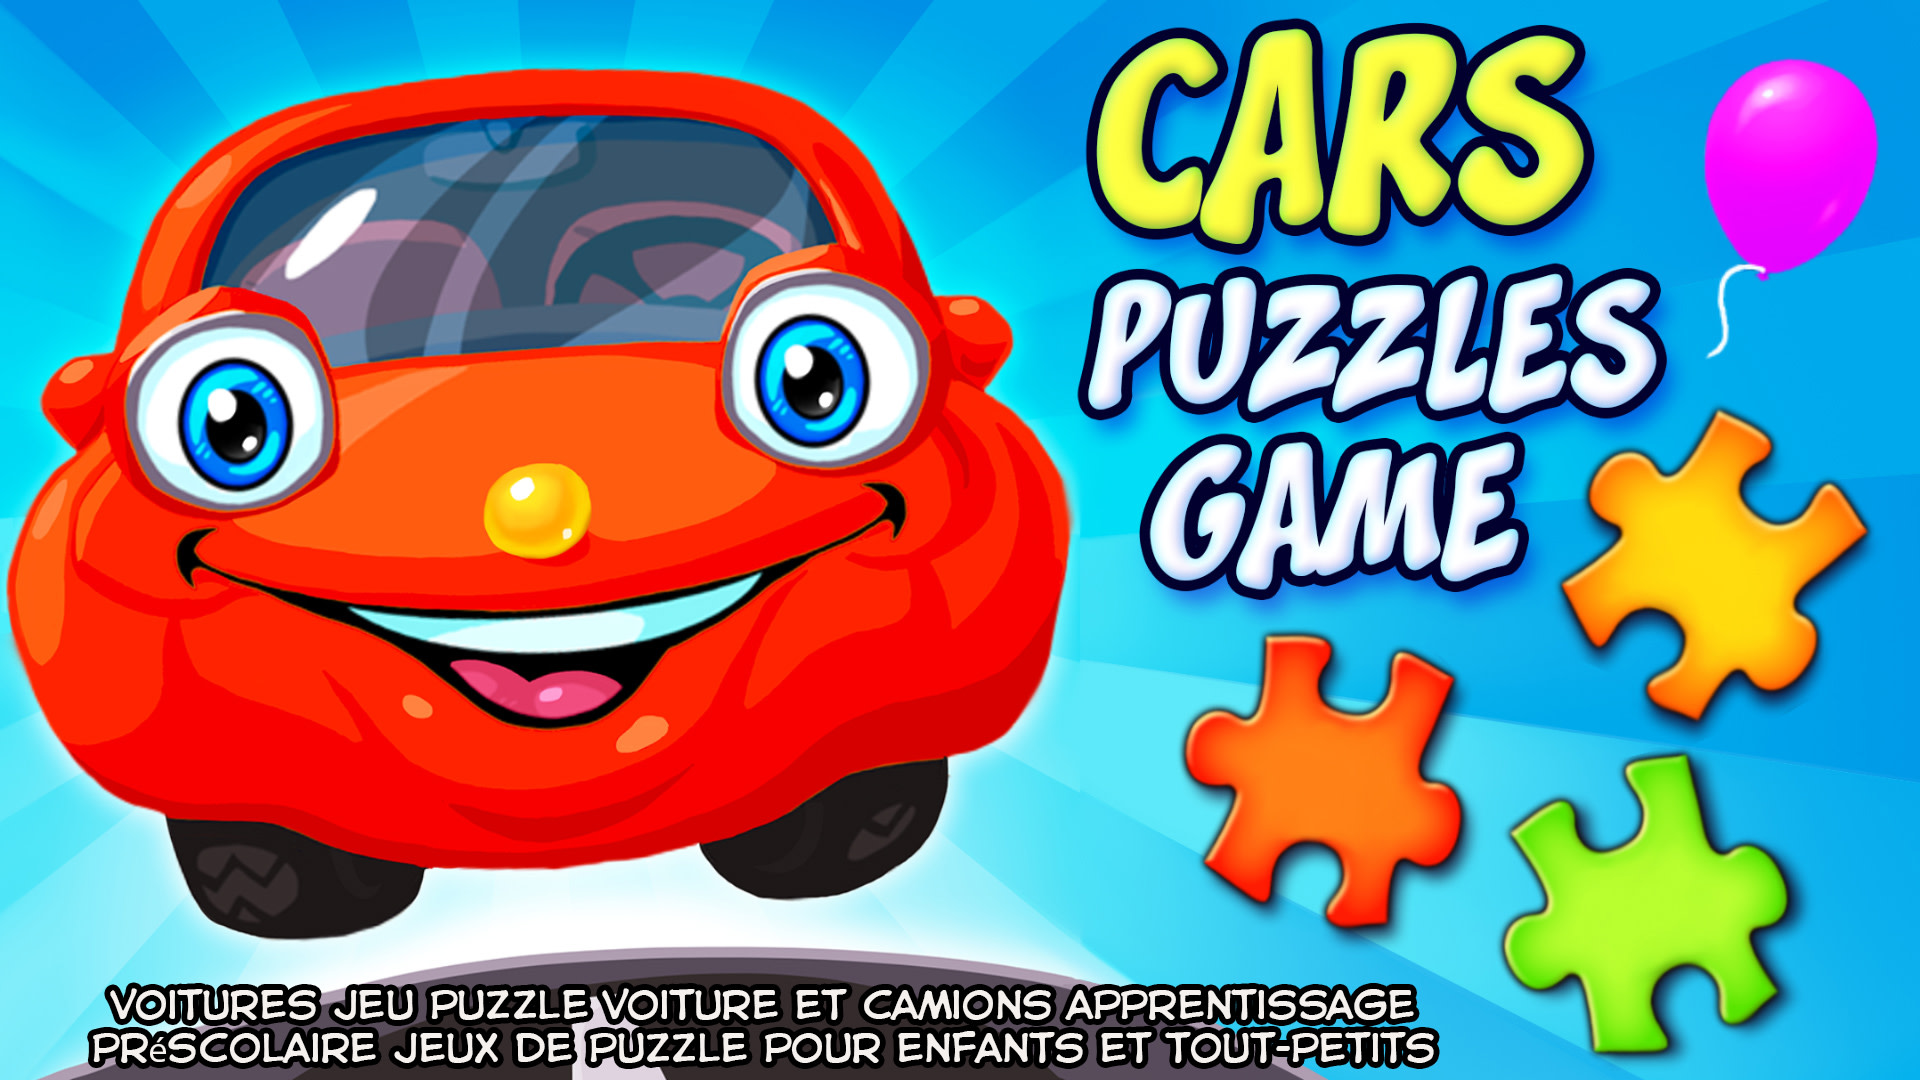 Cars Puzzles Game - voitures jeu puzzle voiture et camions apprentissage préscolaire jeux de puzzle pour enfants et tout-petits